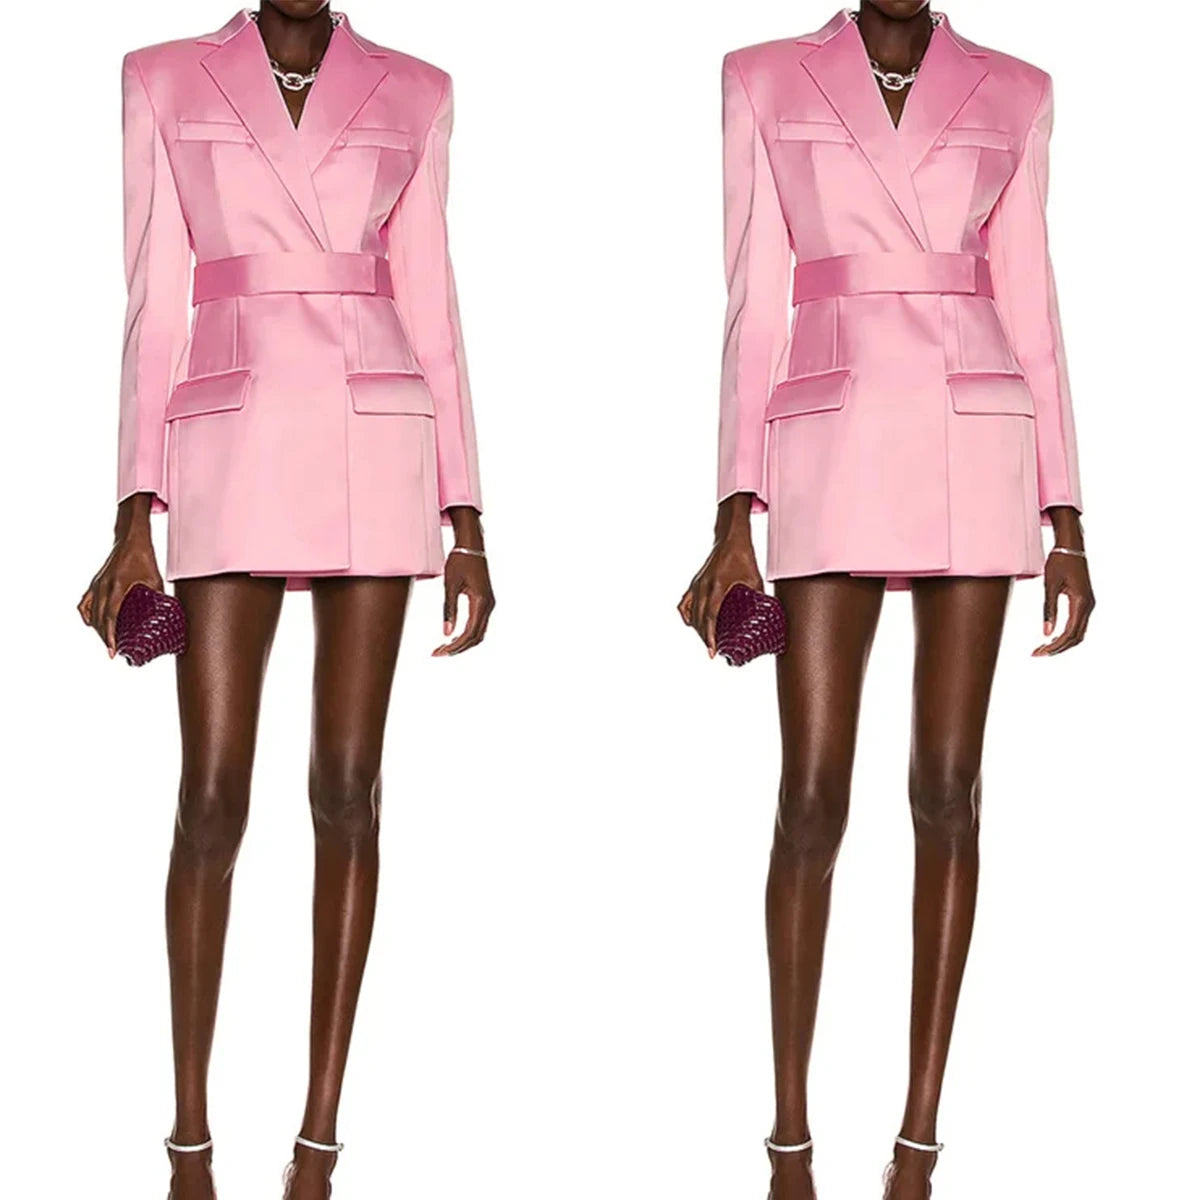 Hot Pink Women Blazer Dress Double Breasted Female Streetwear Sportswear One Jacket With Belt